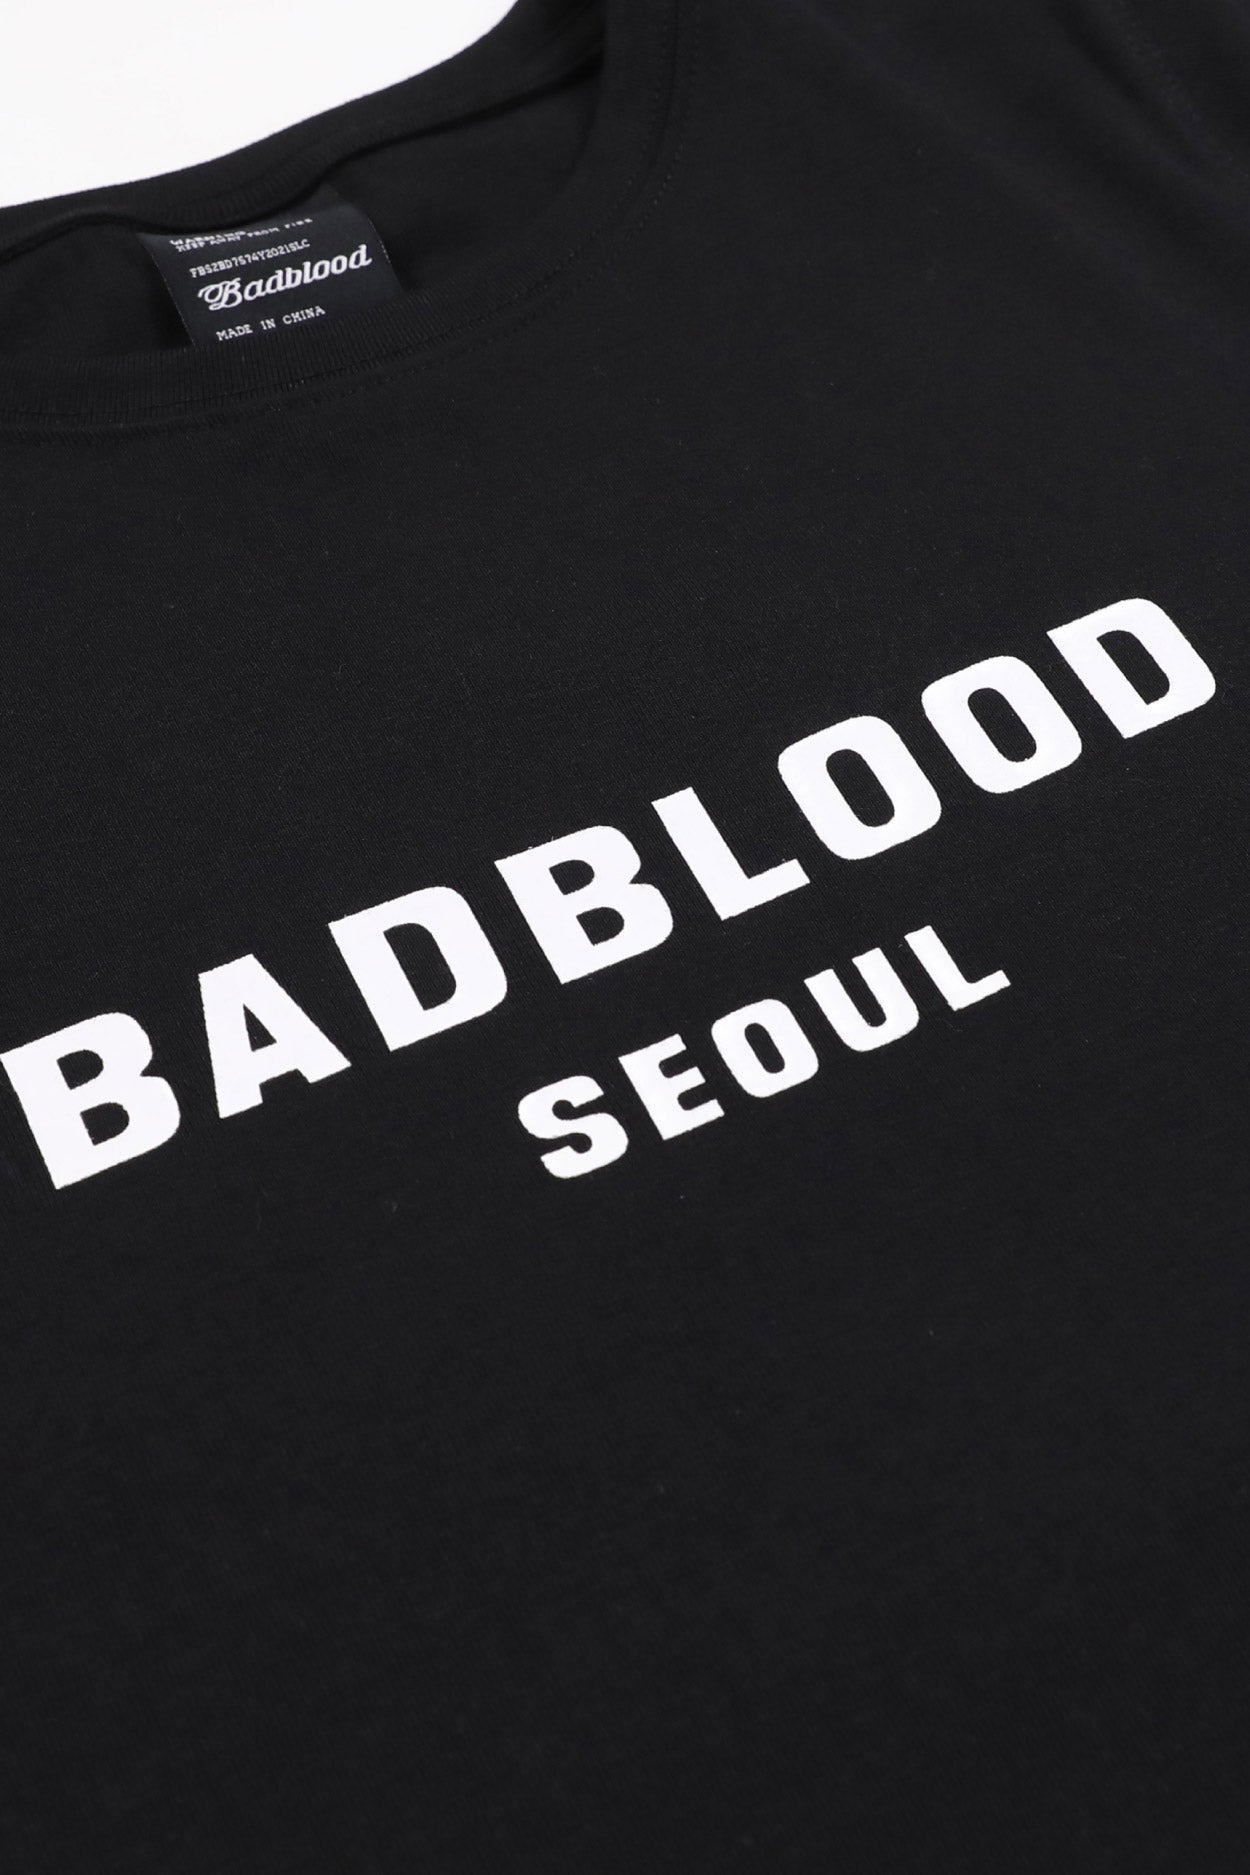 Badblood Printed Logo Short Sleeve Slim Fit Black